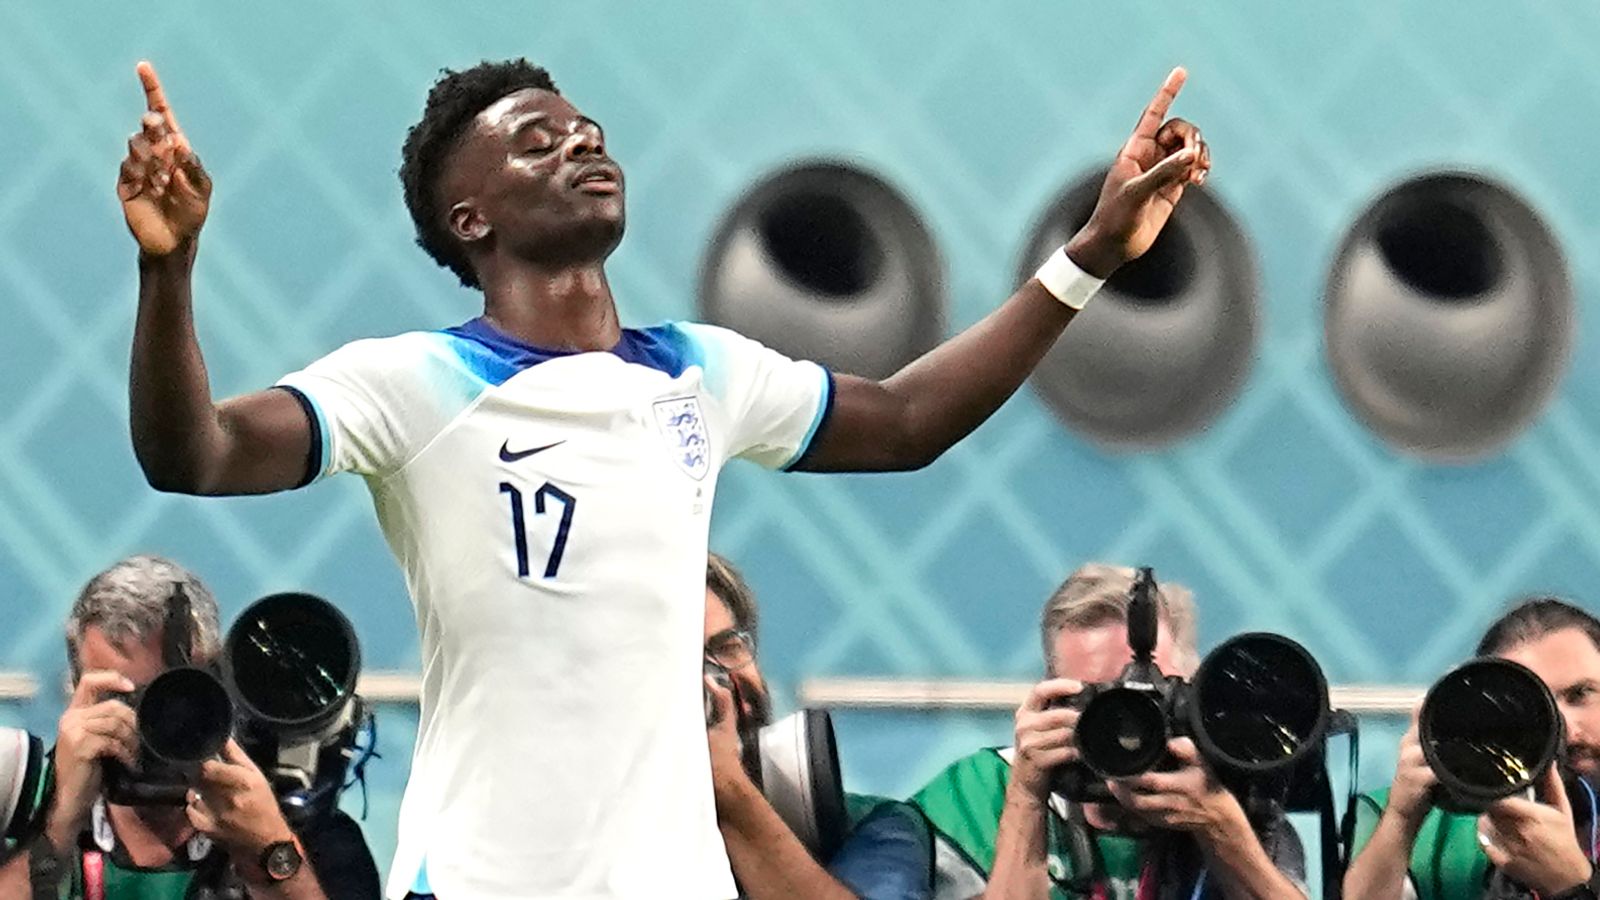 Bukayo Saka titulaire pour l’Angleterre en huitièmes de finale de la Coupe du monde contre le Sénégal ;  Raheem Sterling absent de ‘Family Affair’ |  nouvelles du football